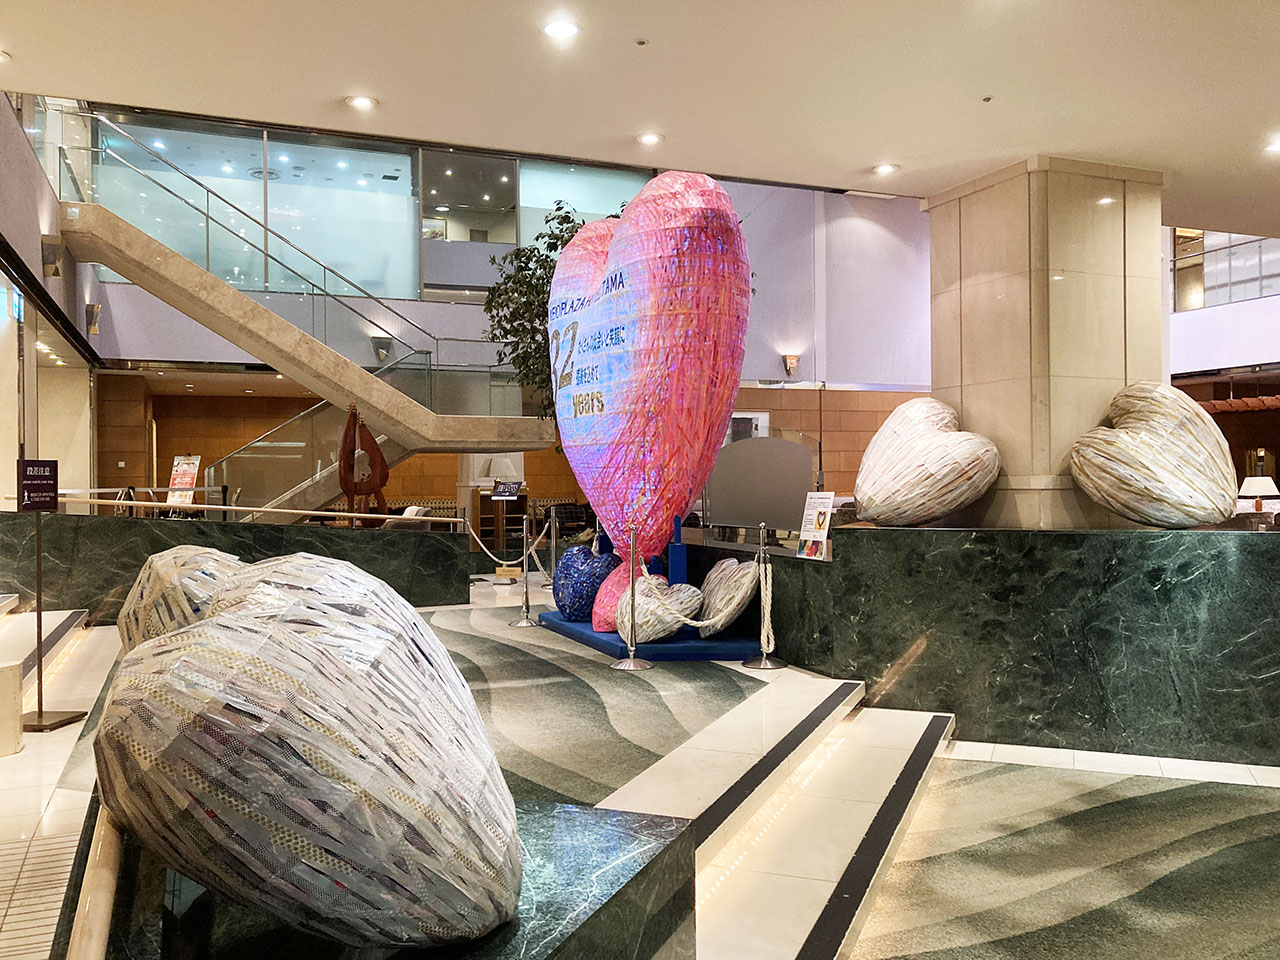 京王プラザホテル多摩で32年間の感謝の気持を込めて全長約３mの光のハート形オブジェが展示されています！